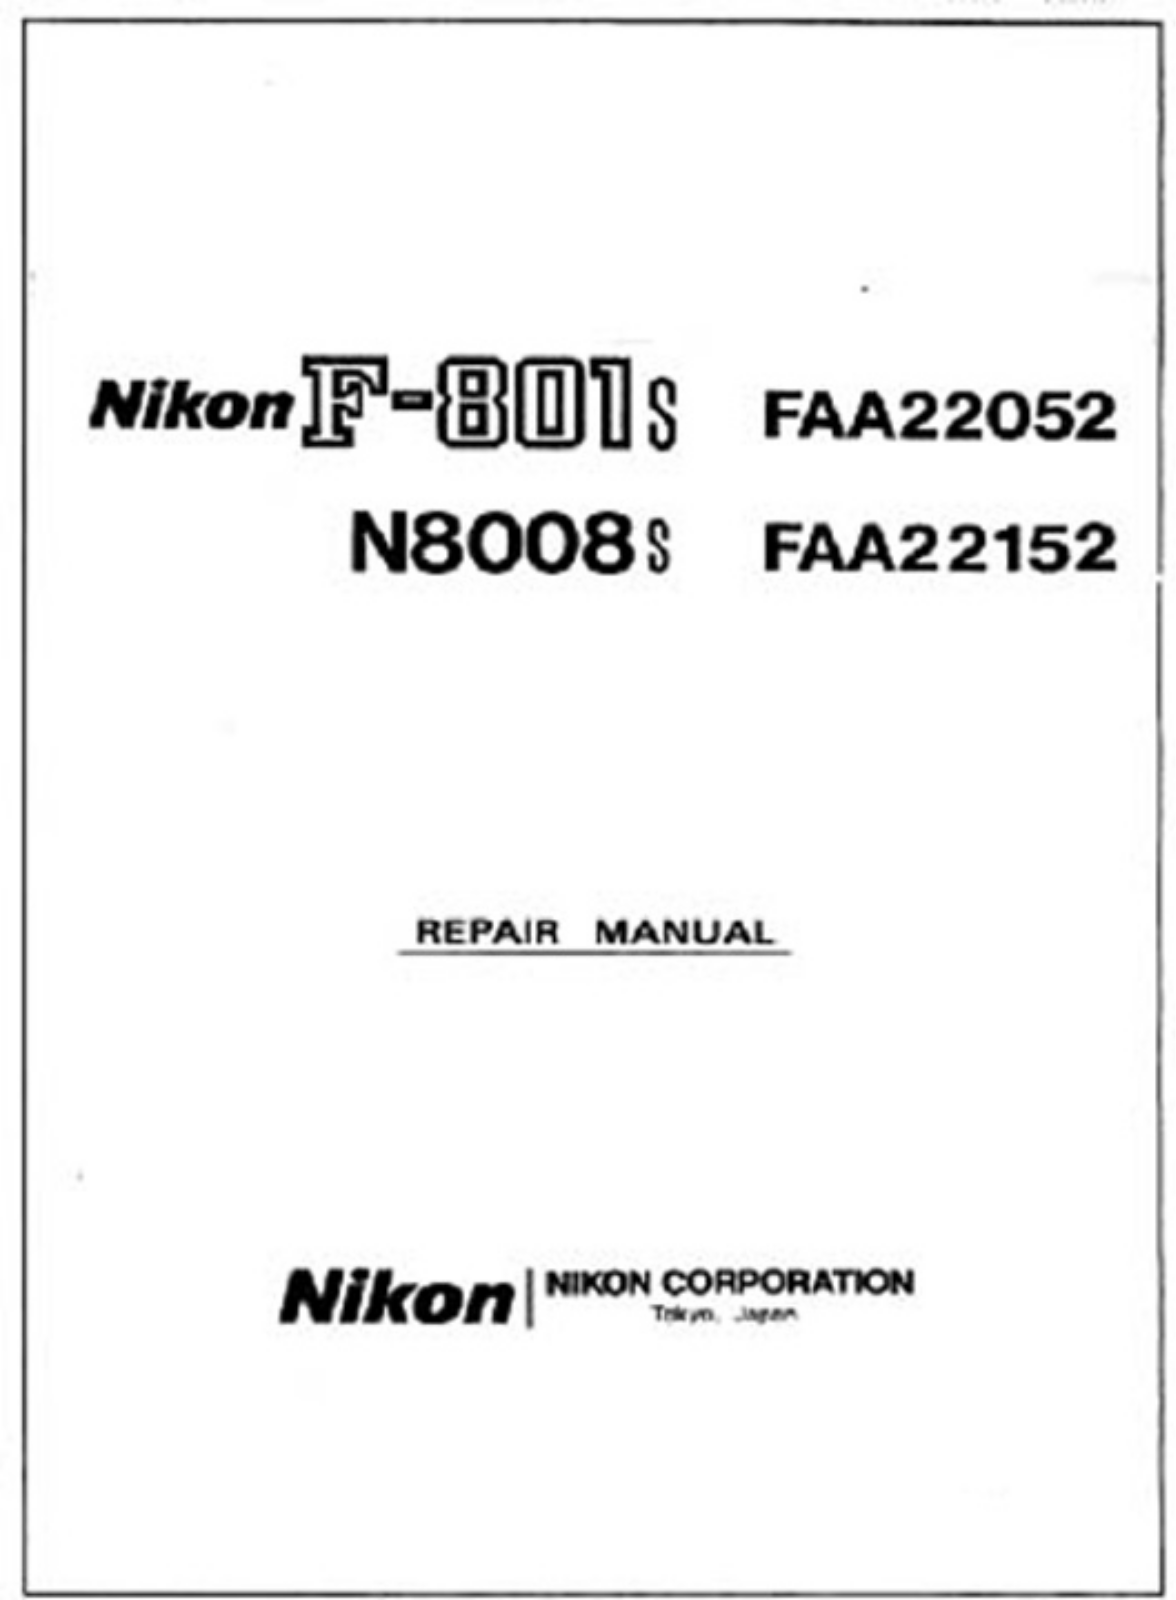 Nikon F801s Repair Manual